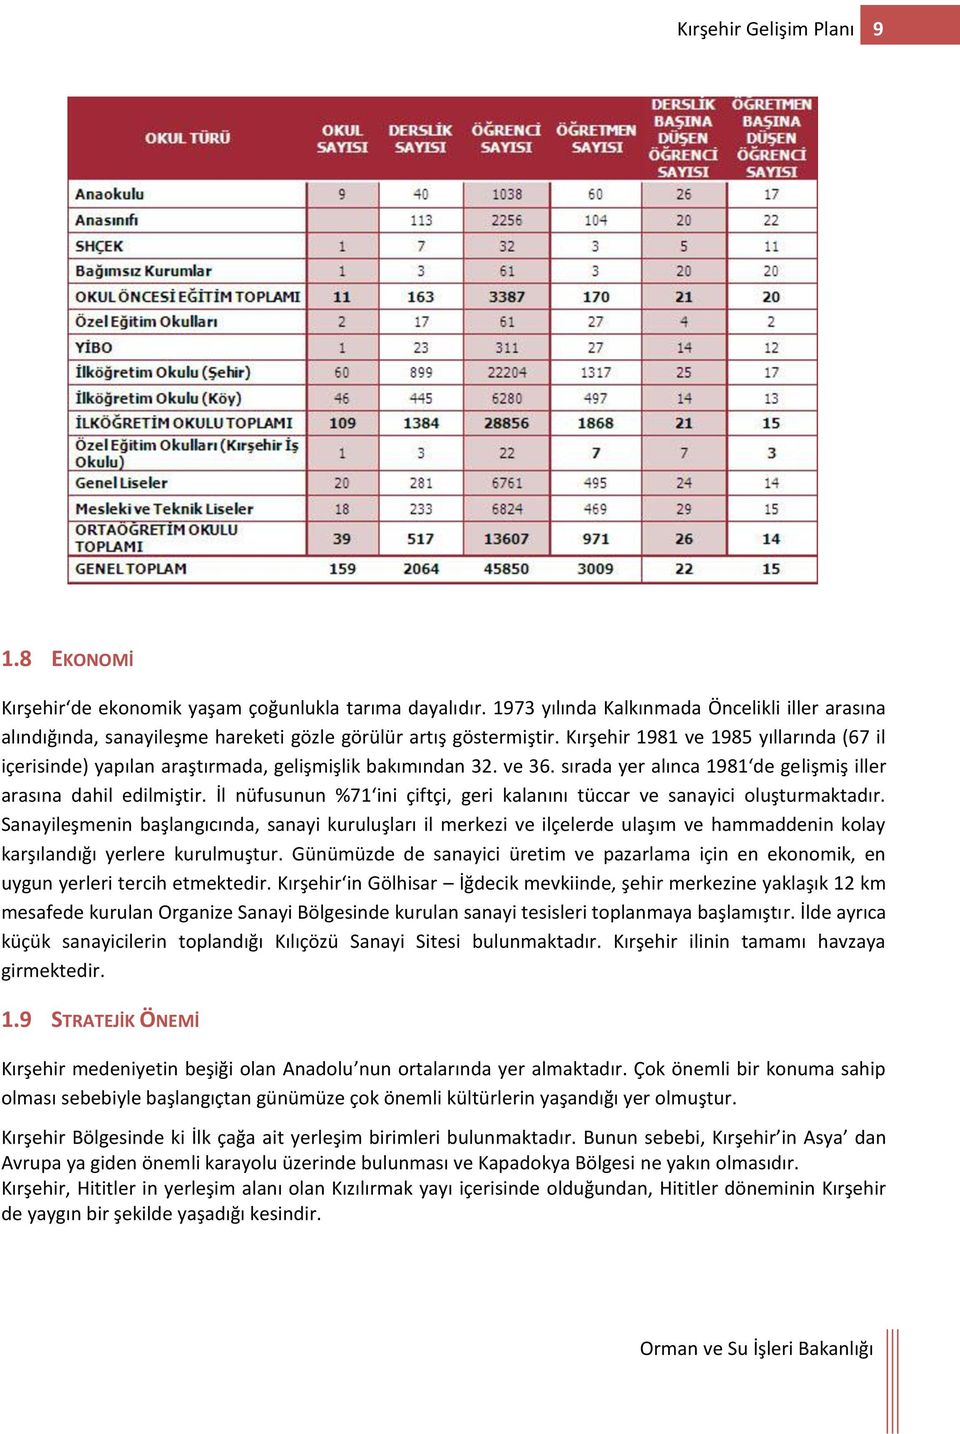 Kırşehir 1981 ve 1985 yıllarında (67 il içerisinde) yapılan araştırmada, gelişmişlik bakımından 32. ve 36. sırada yer alınca 1981 de gelişmiş iller arasına dahil edilmiştir.